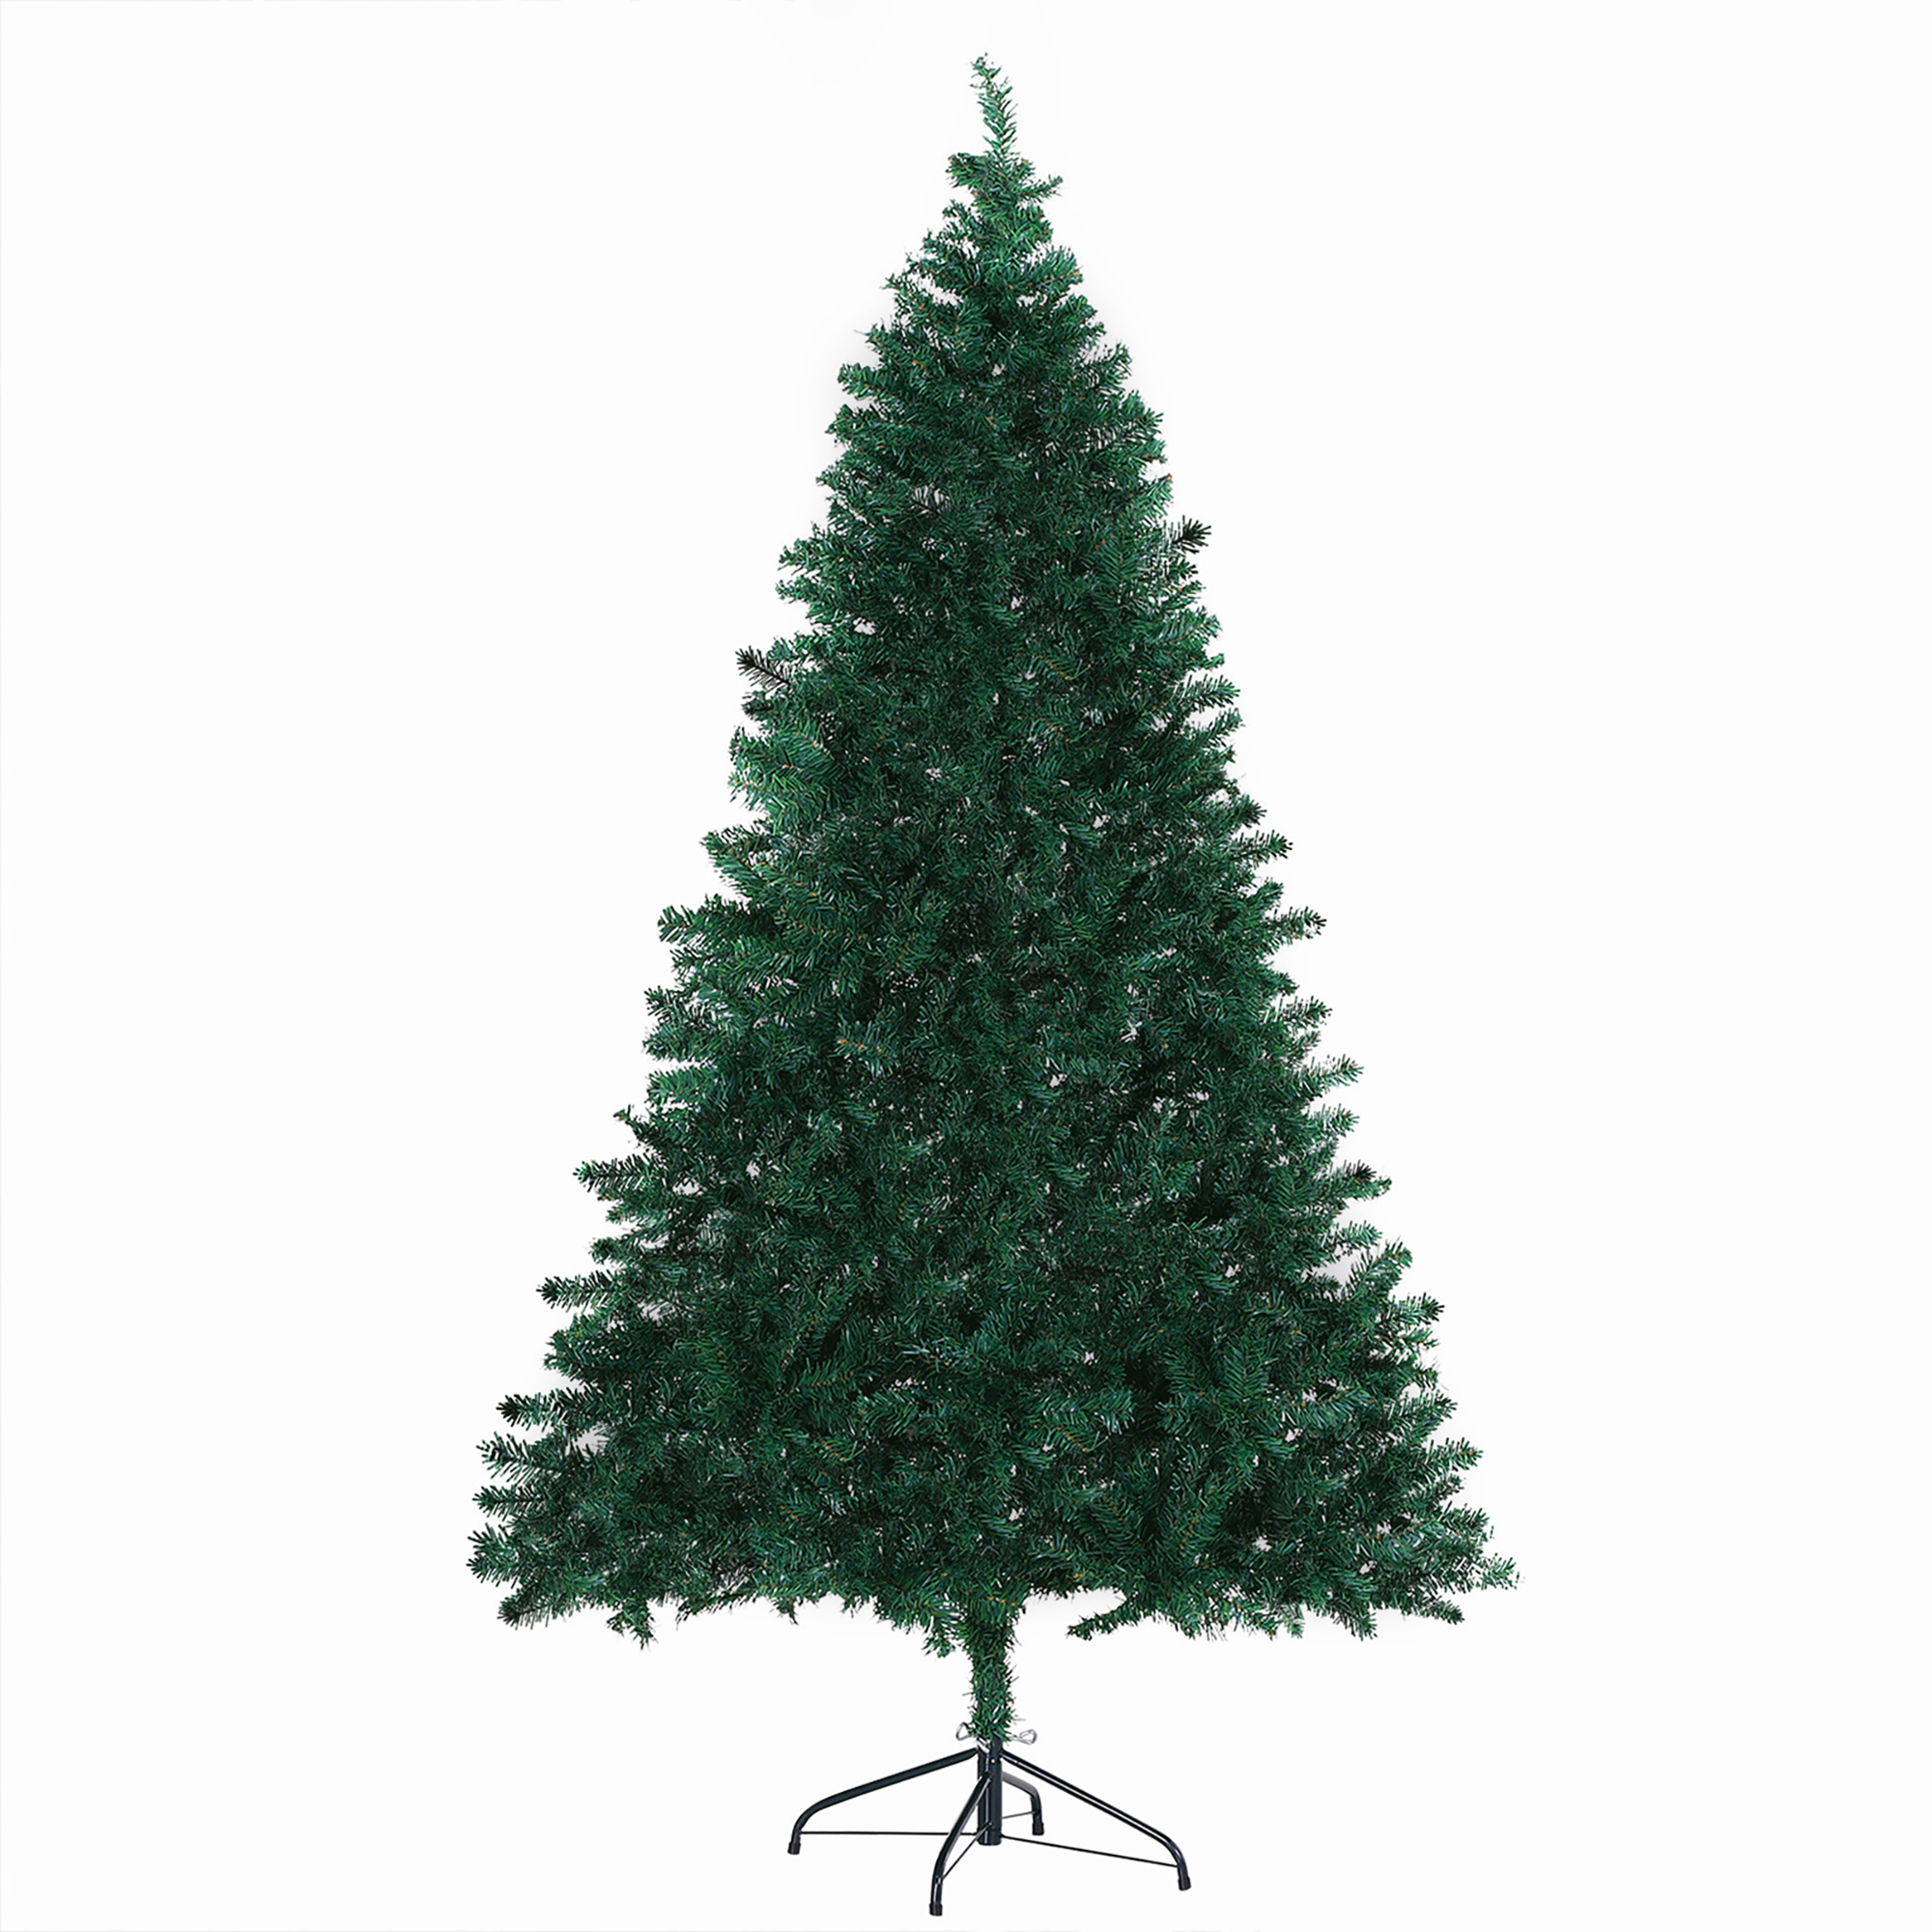 Τεχνητό Χριστουγεννιάτικο Δέντρο με 1000 Κλαδιά και Ατσάλινη Βάση 180 cm HOMCOM 830-245